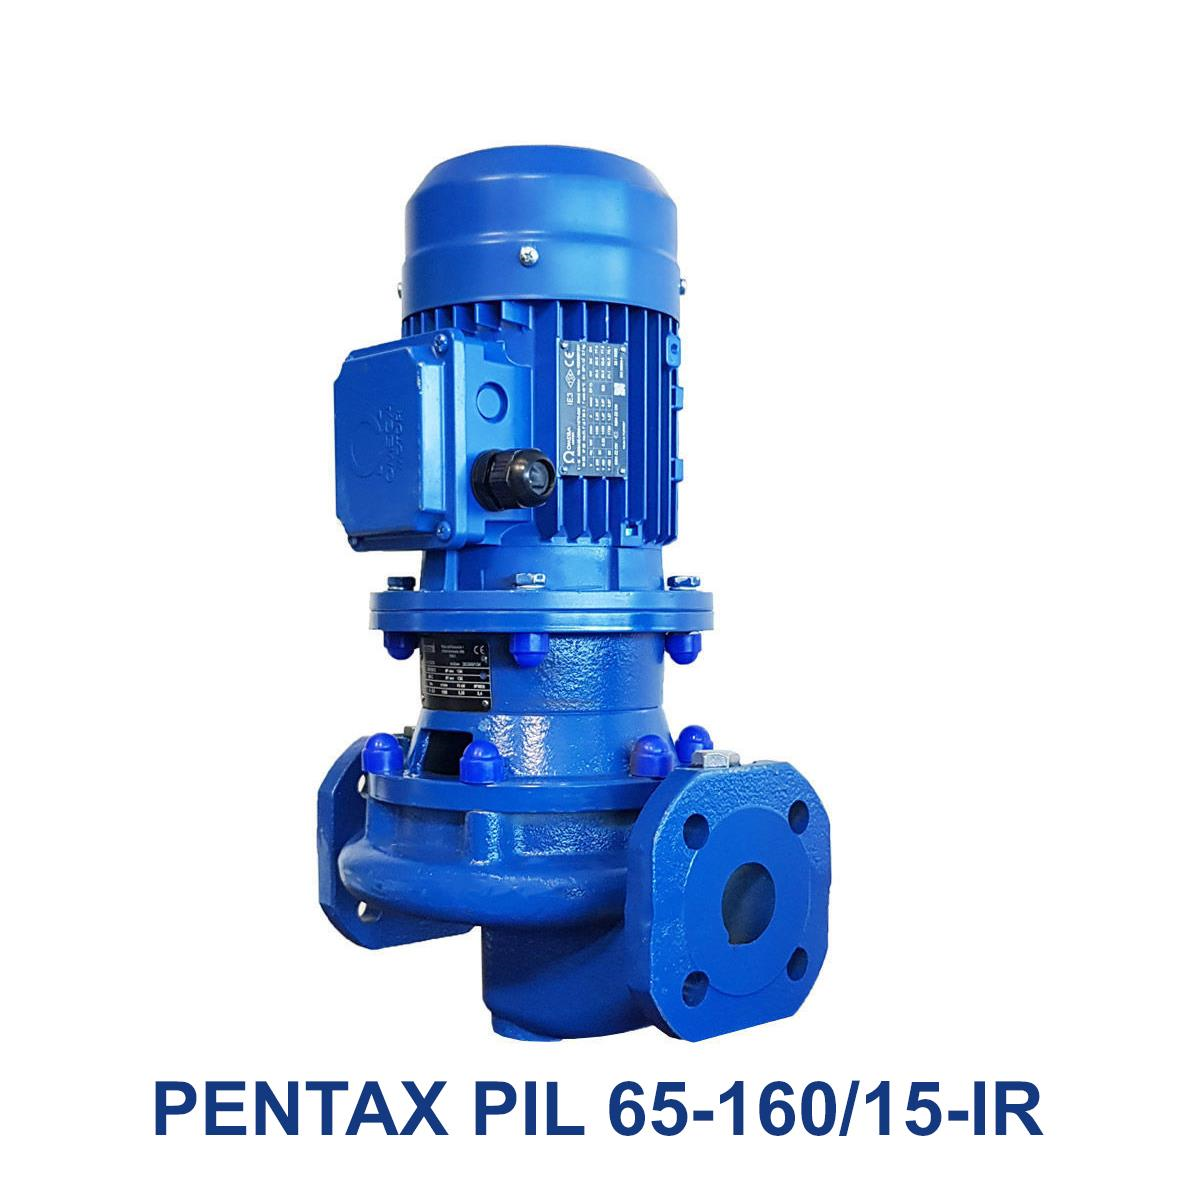 PENTAX-PIL-65-160-15-IR